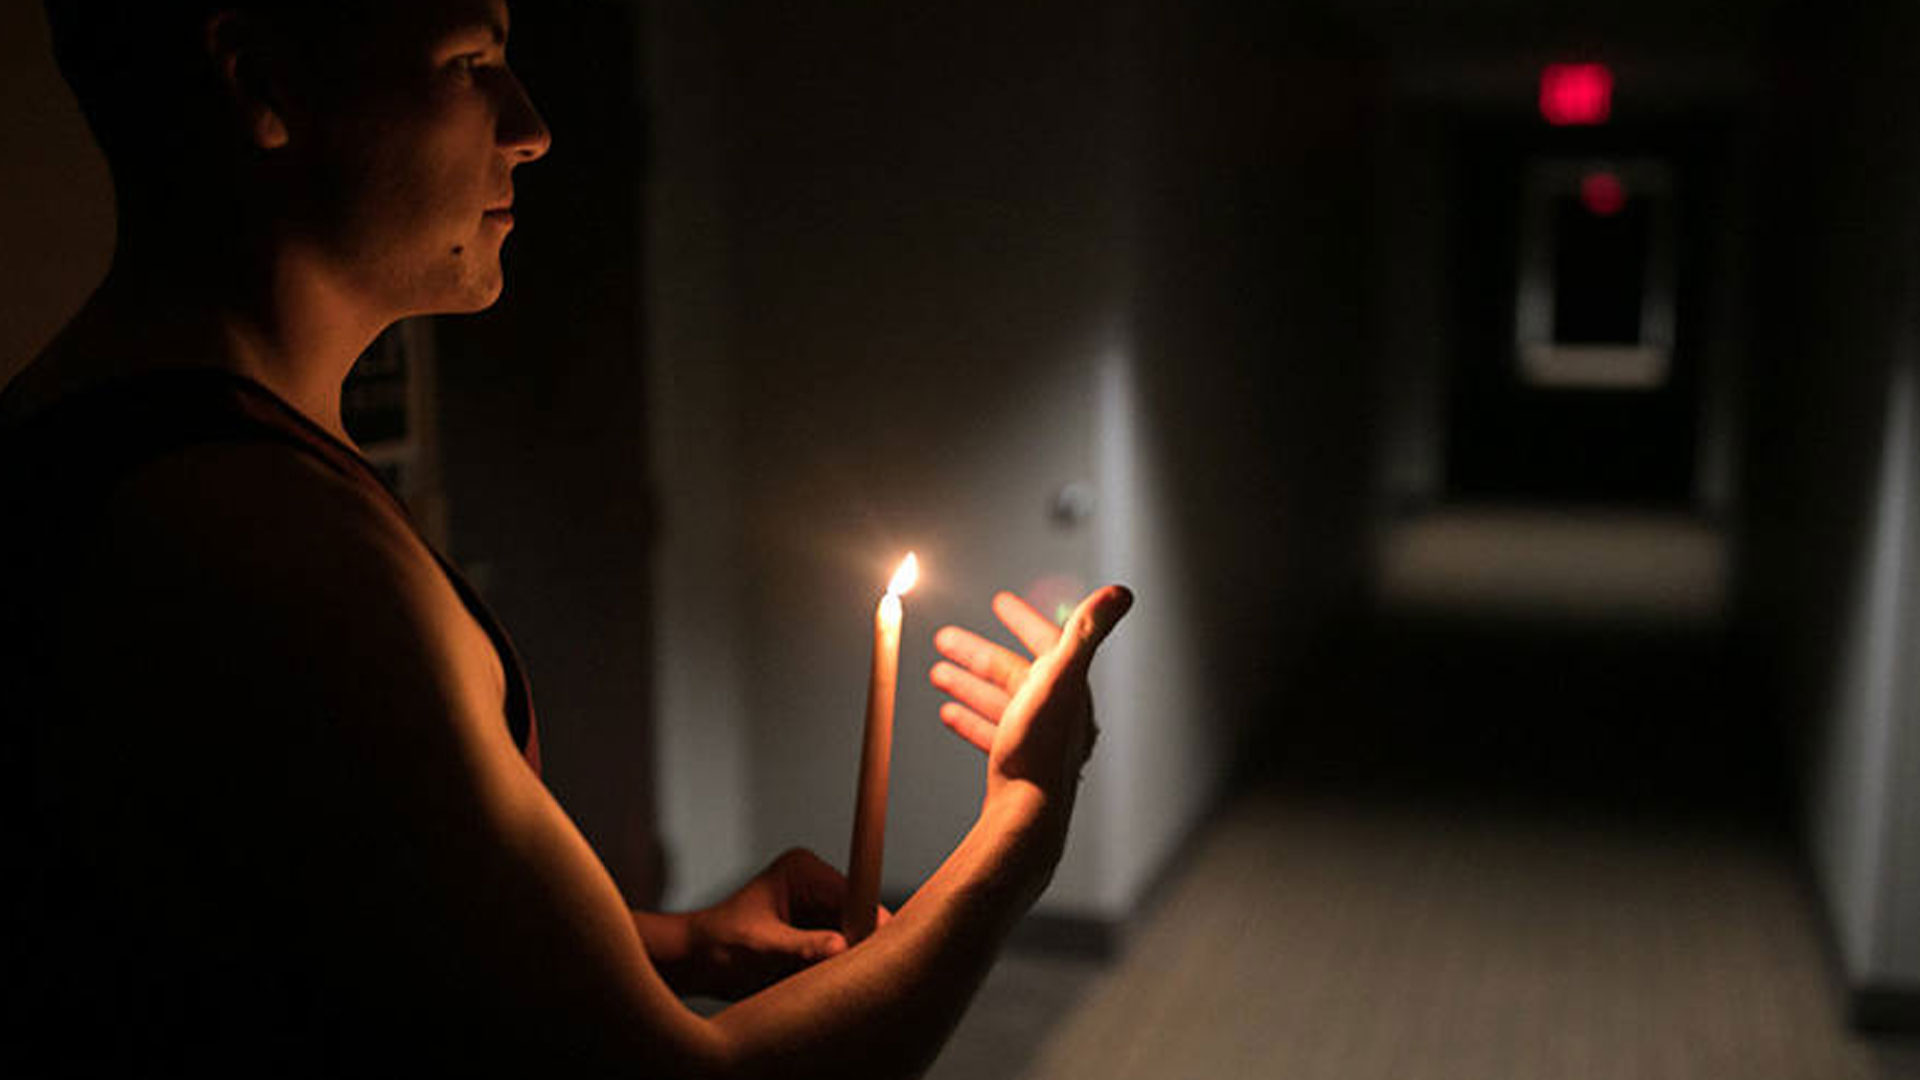 “Hasta cuándo este desastre”: En Punto Fijo denuncian que tienen 20 horas sin servicio eléctrico #23Mar